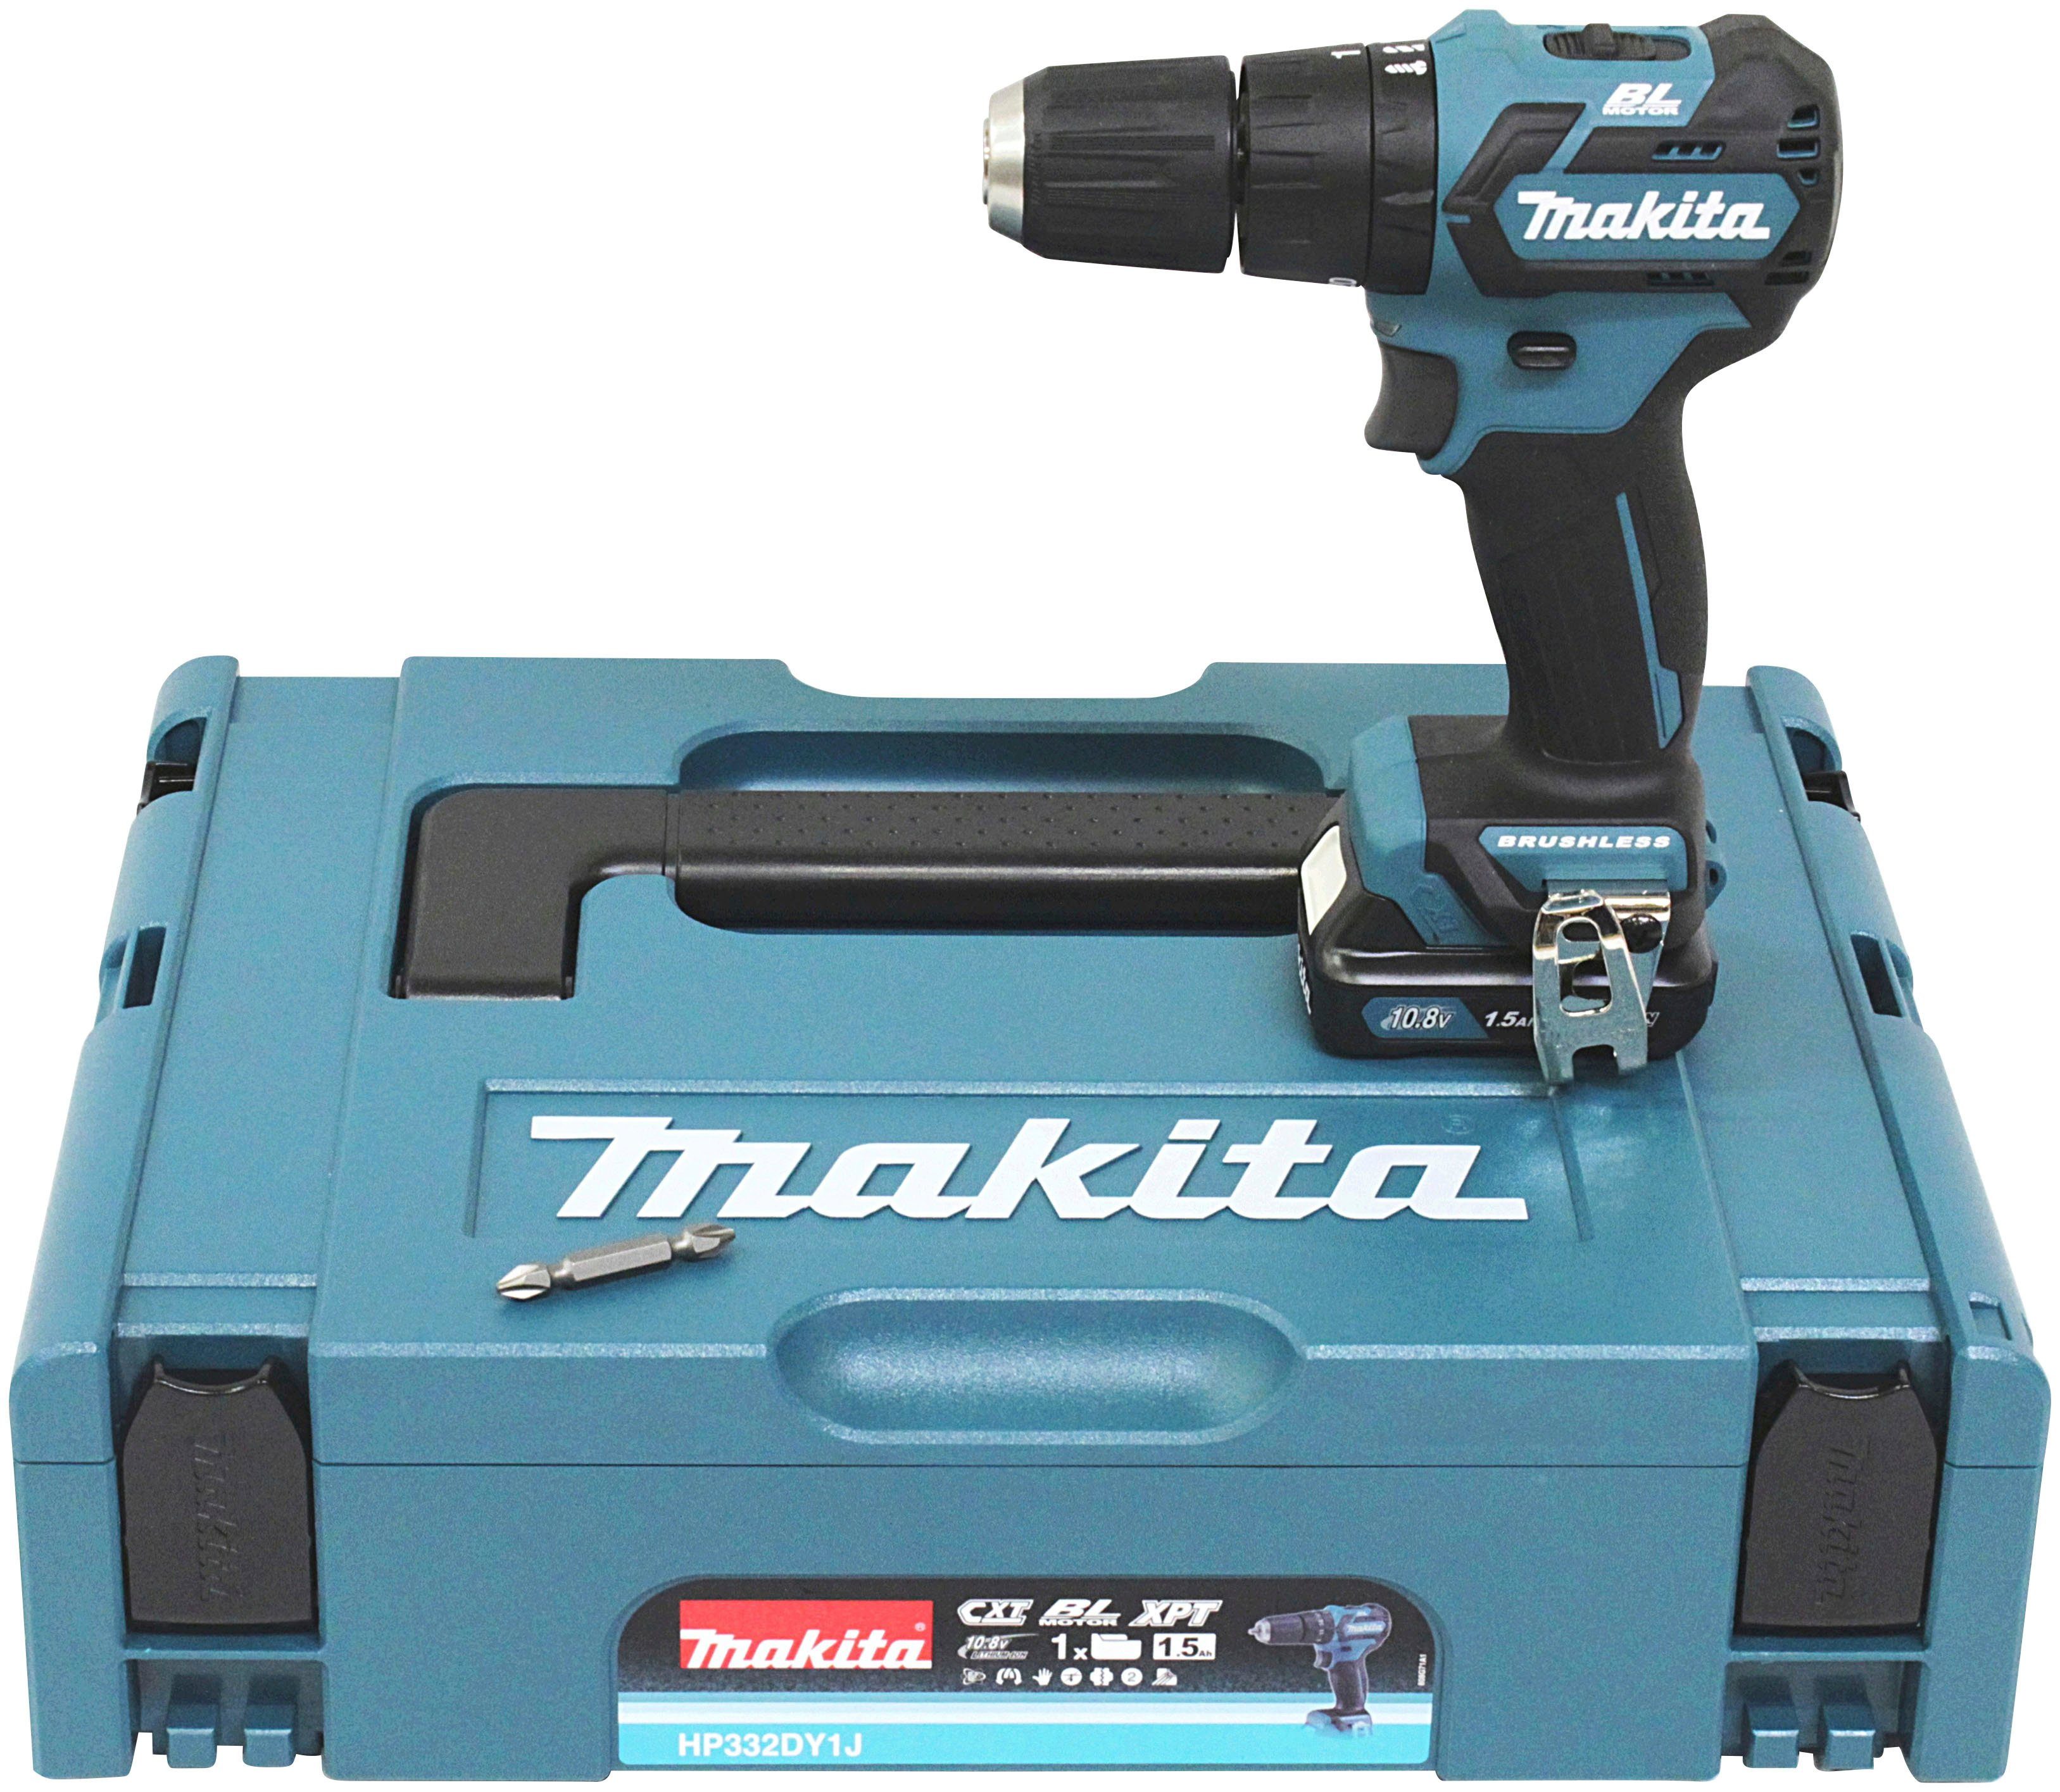 Makita Akku-Schlagbohrschrauber HP332DY1J, max. 22500 U/min, inkl. Koffer Akku 